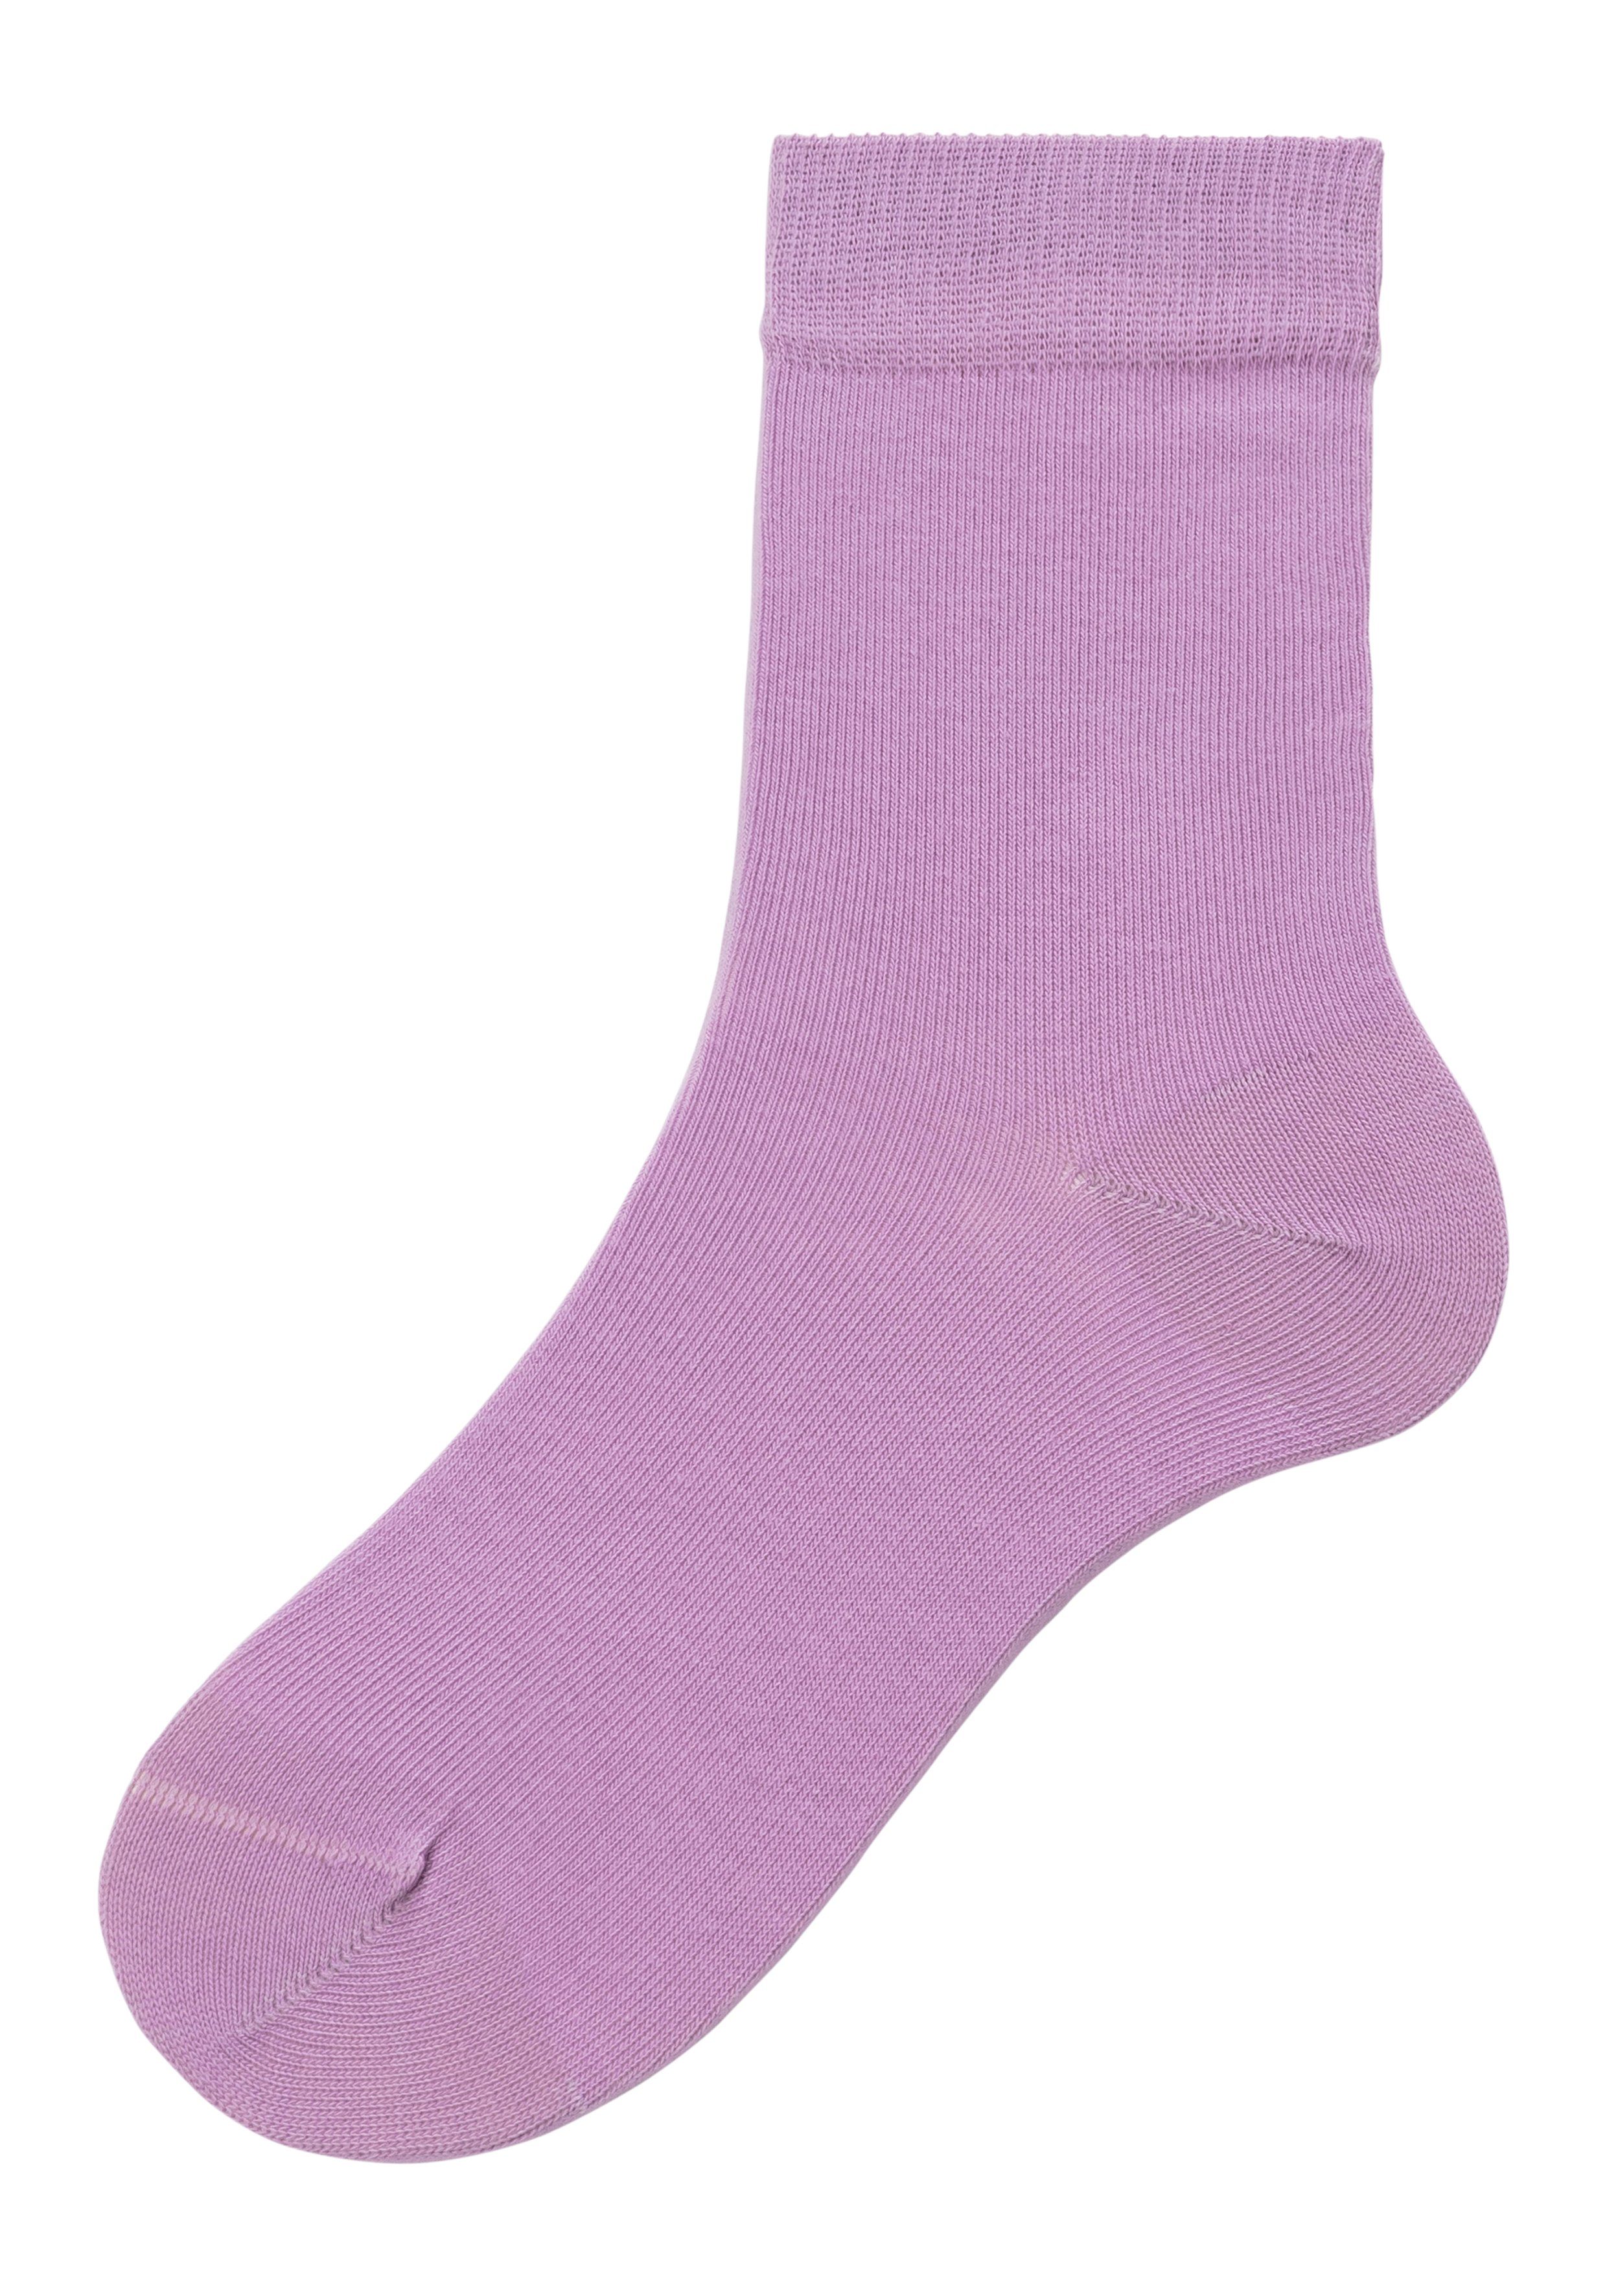 1x 4-Paar) unterschiedlichen bordeaux 1x 1x Socken (Set, blau, 1x pink, Farbzusammenstellungen in flieder, H.I.S